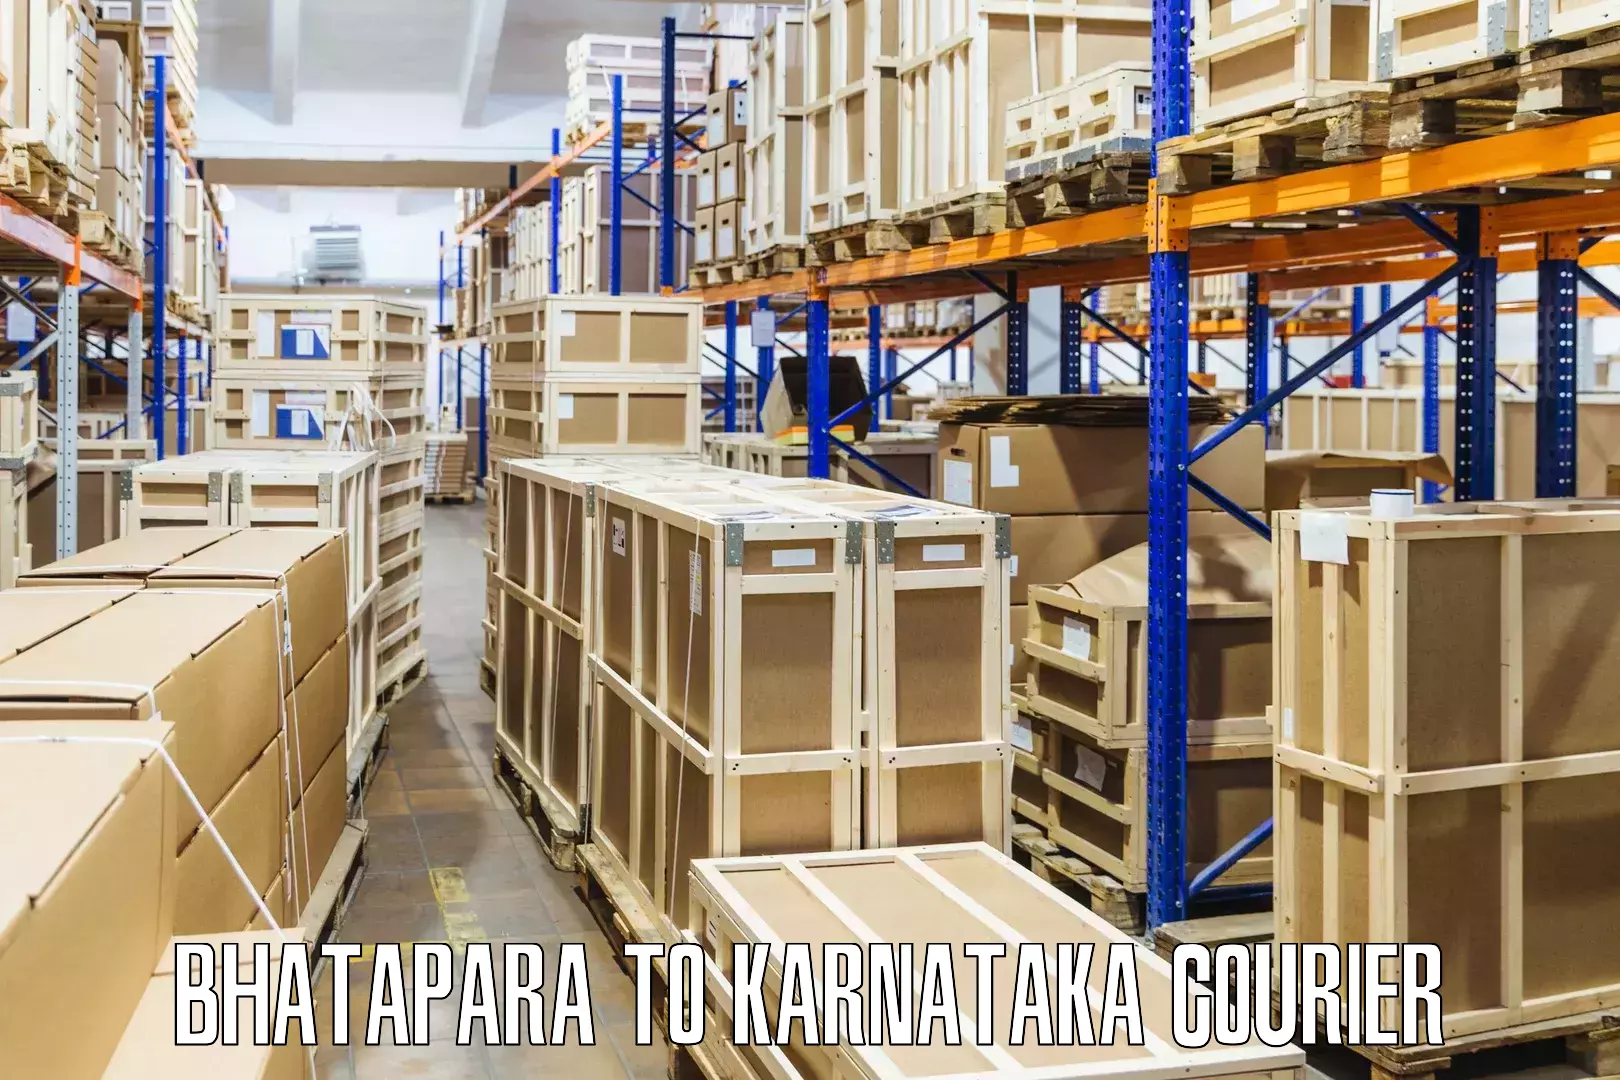 Tech-enabled shipping in Bhatapara to Raichur